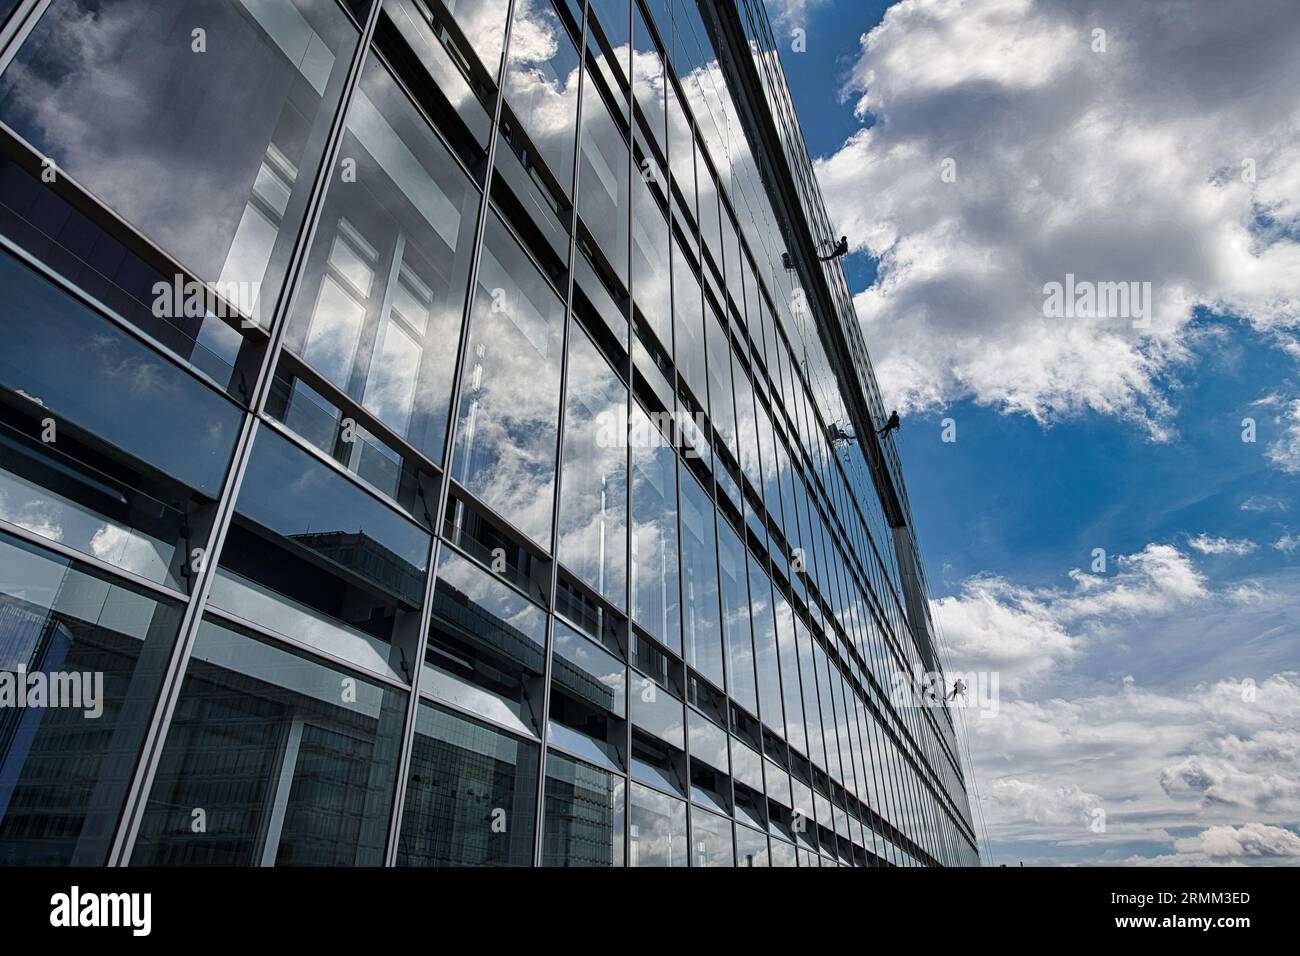 Germania, Deutschland, Amburgo, Architektur, architettura, Gebaeude, Building, ZDF-Haus , Landesstudio, DOC, Deichtor Office Center, con finestra pulita Foto Stock